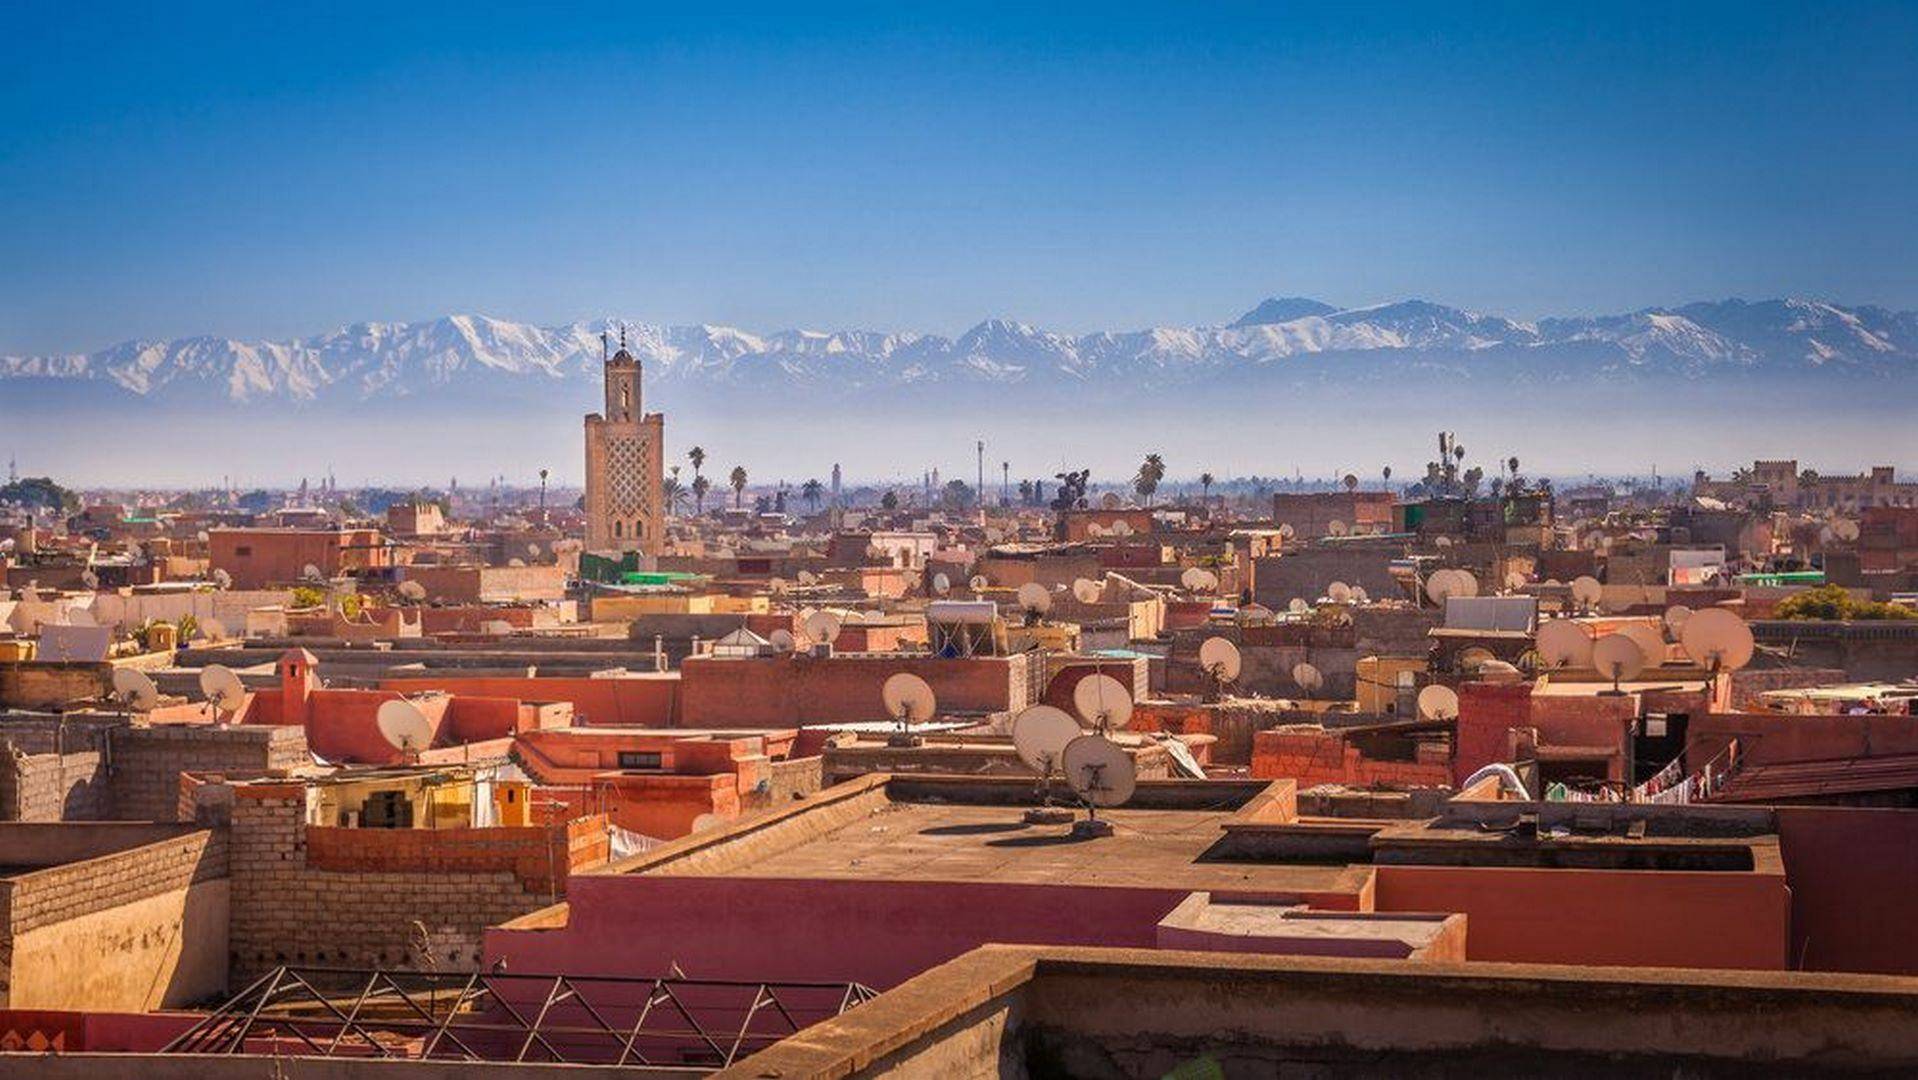 ¡Bienvenidos a Marrakech!